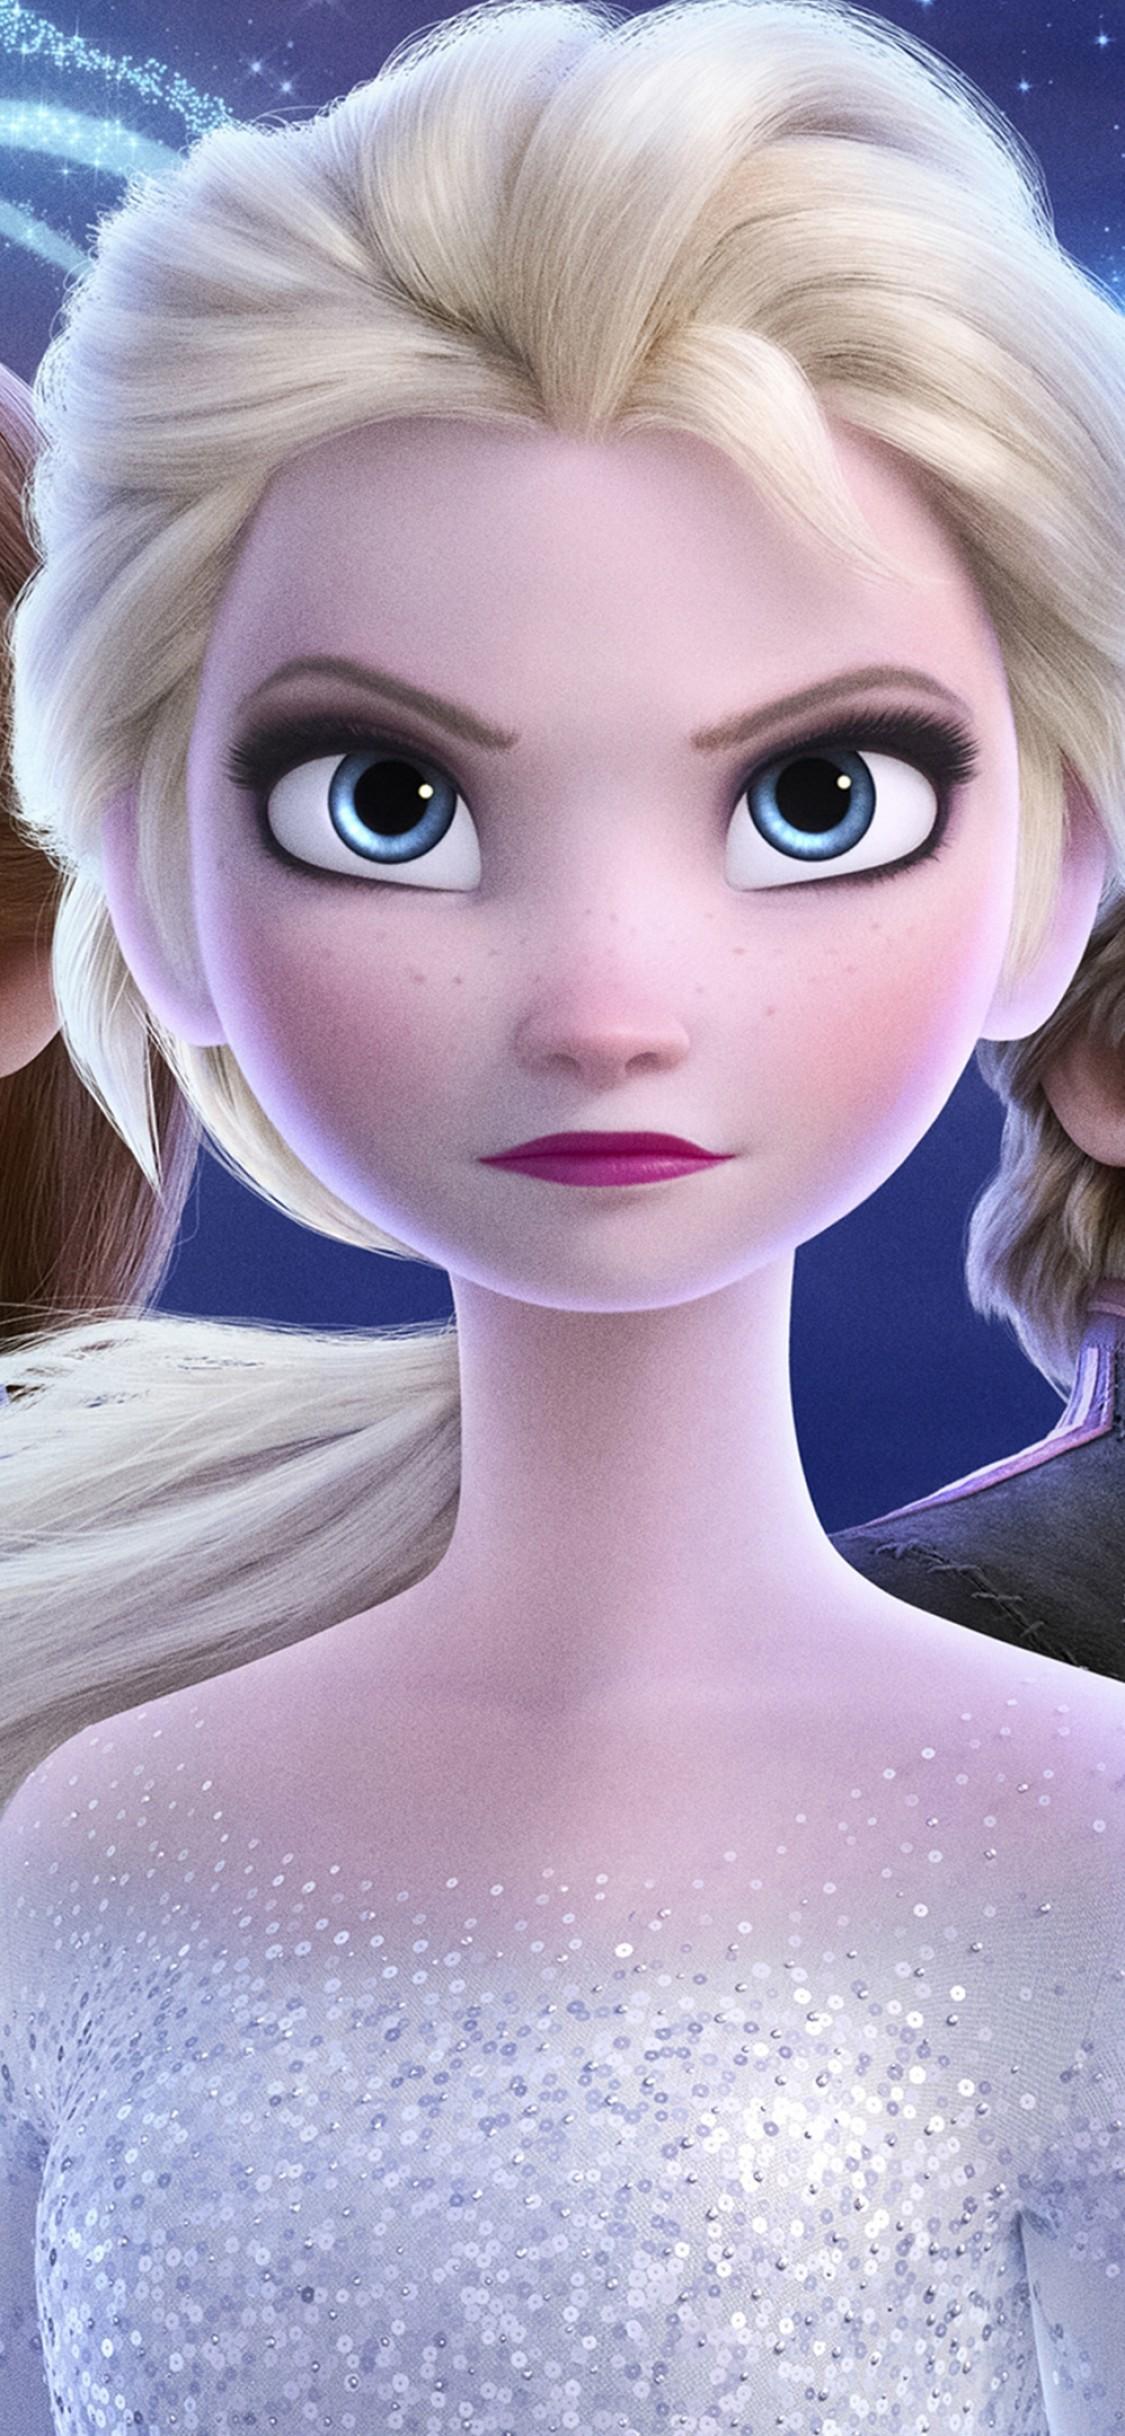 Download 1125x2436 Frozen Queen Elsa, Animation, Anna